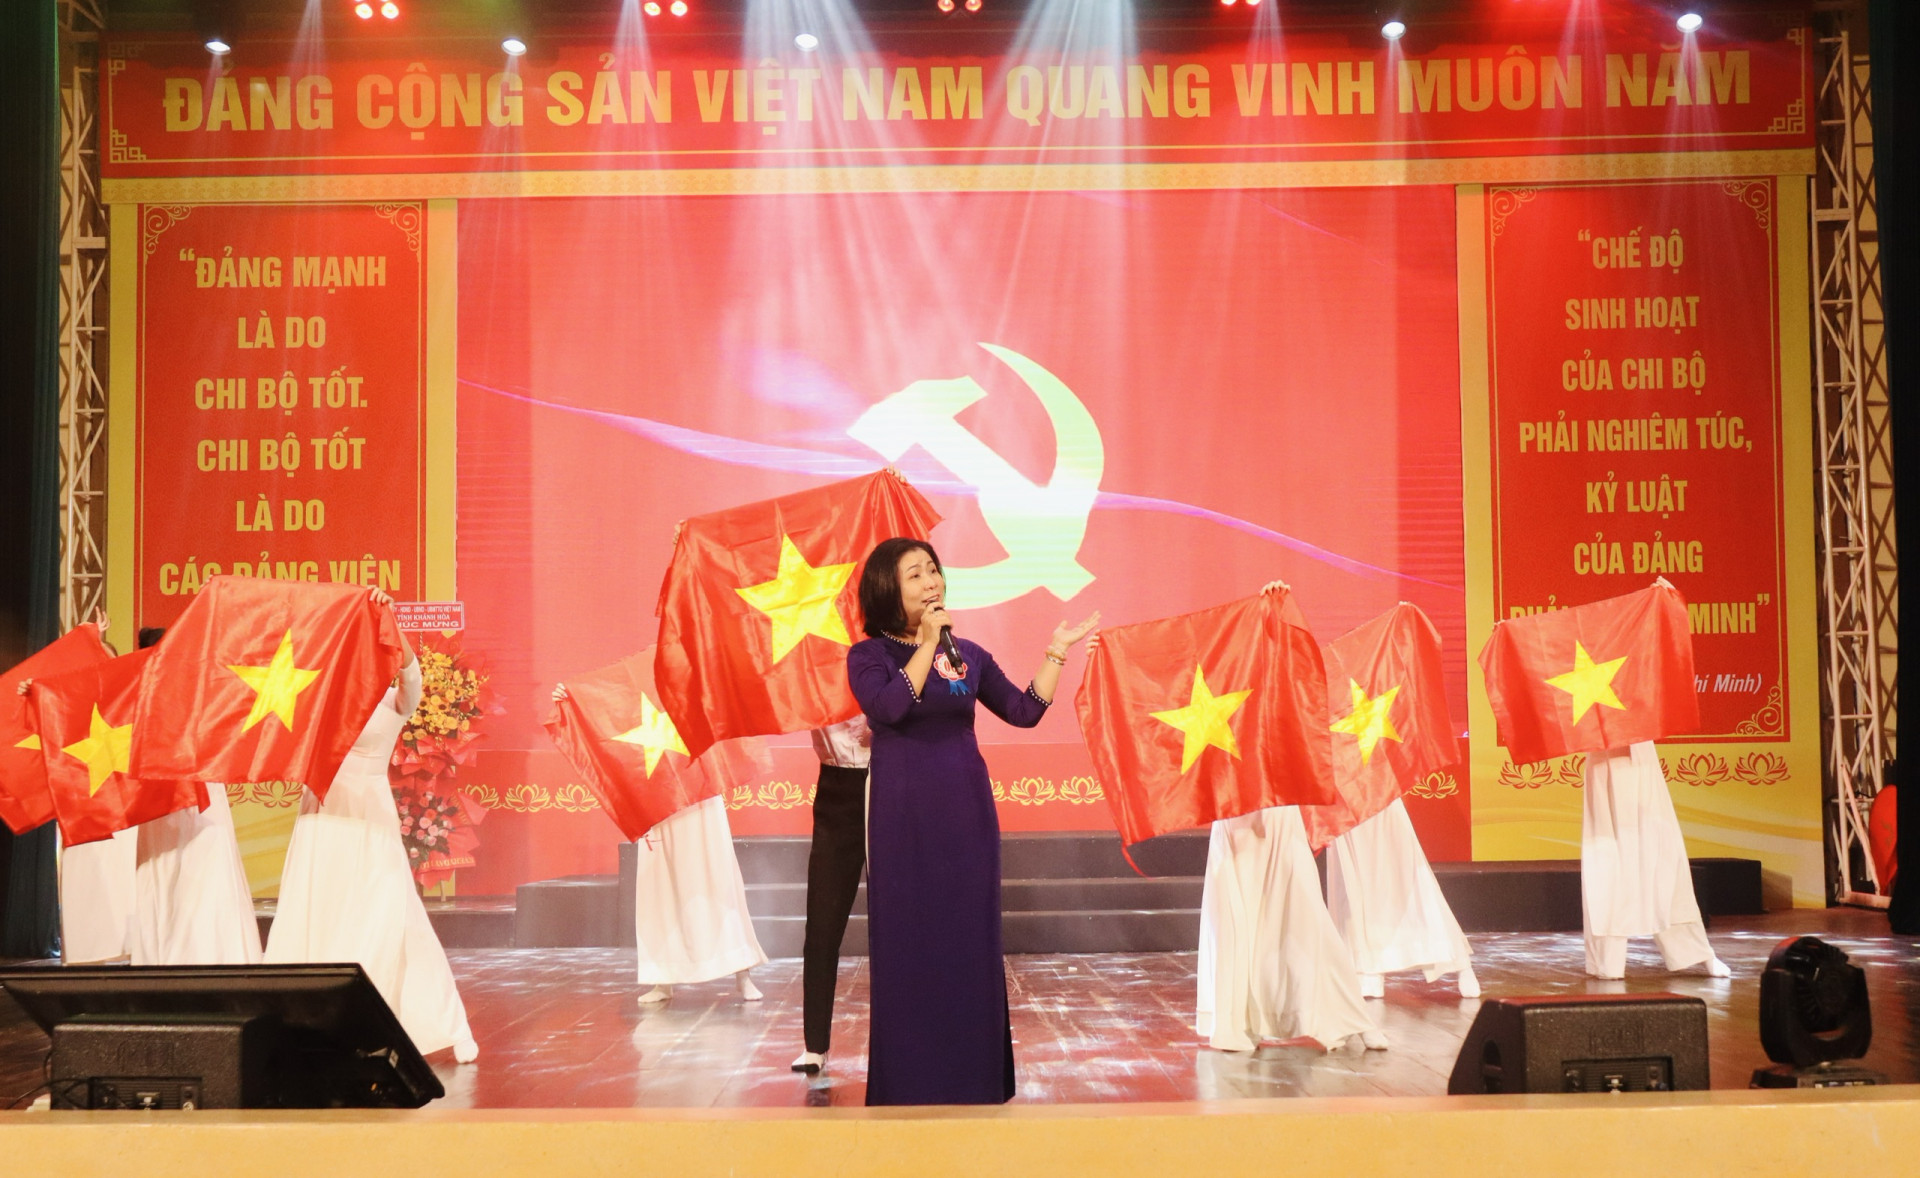 Phần thi chào hỏi của thí sinh Phạm Thị Minh Nguyệt - Bí thư chi bộ 1, Đảng bộ Trưởng Cao đẳng Du lịch Nha Trang